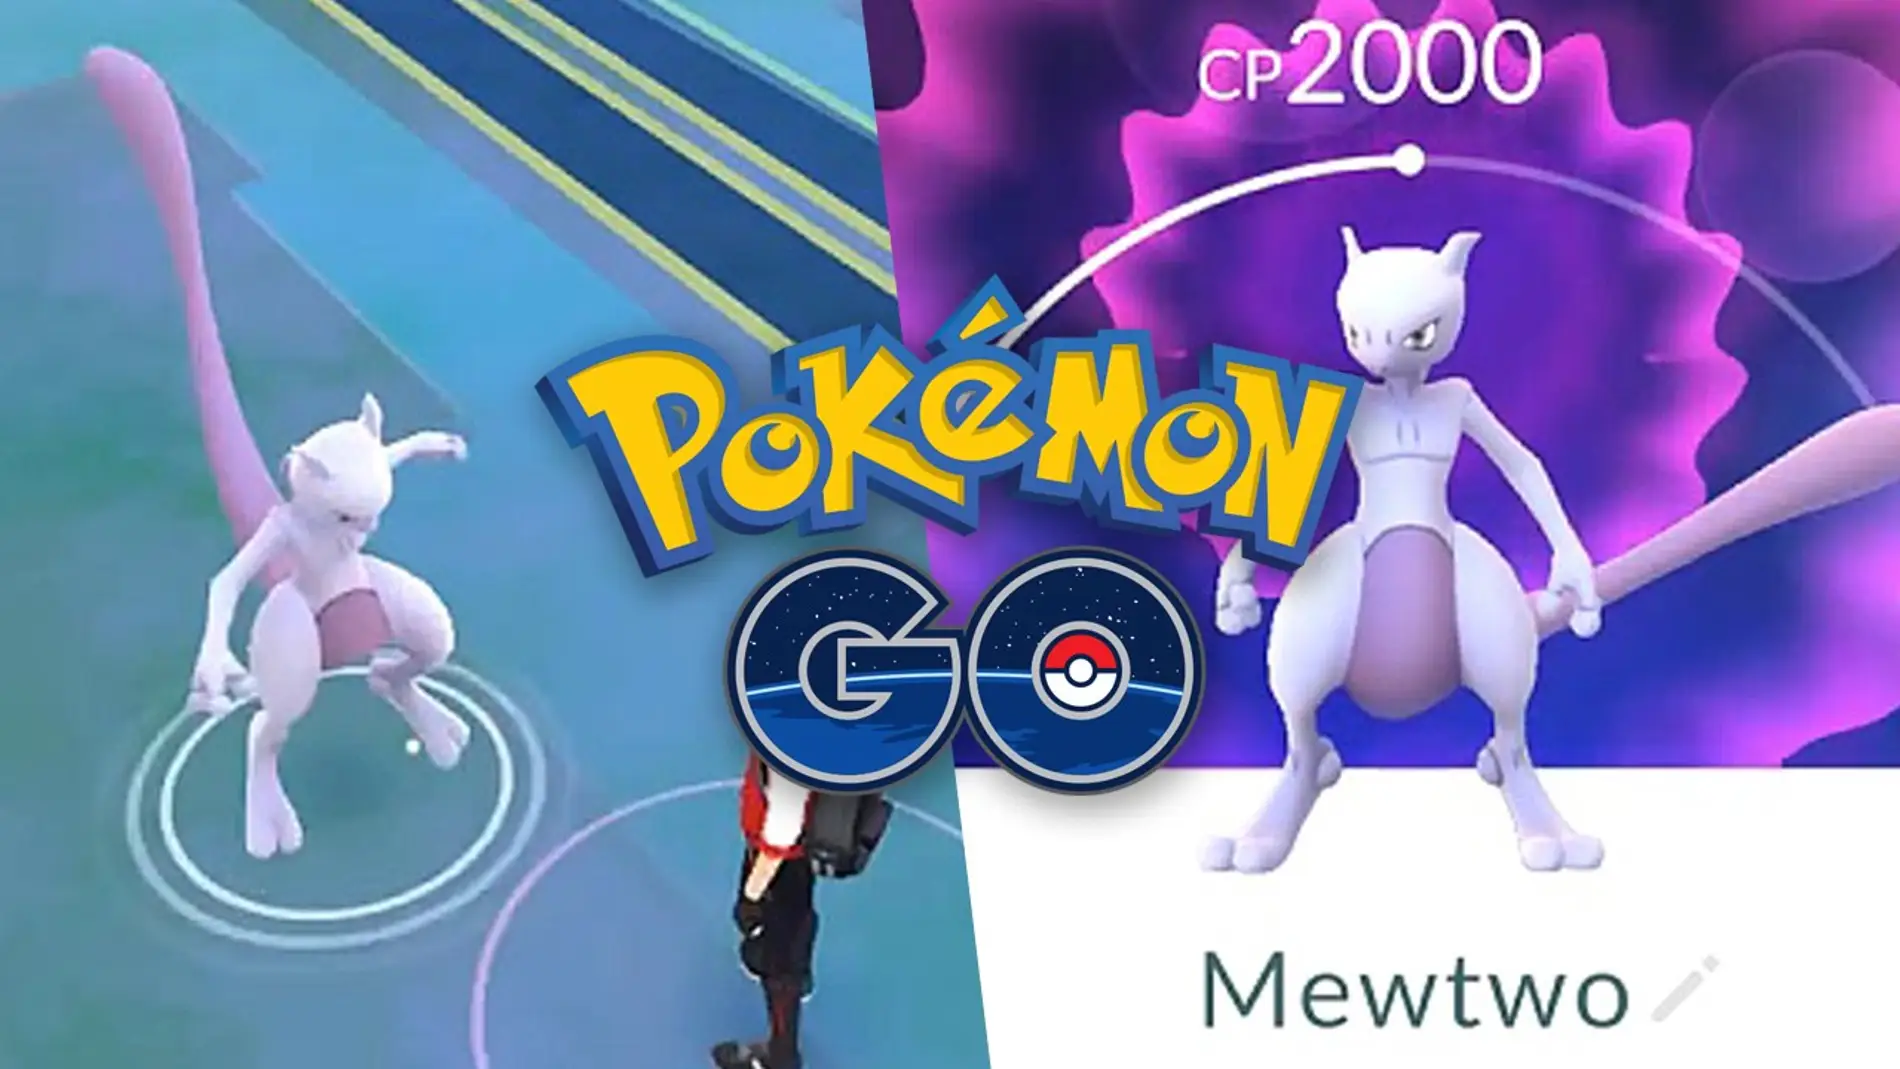 MewTwo en Pokémon GO 